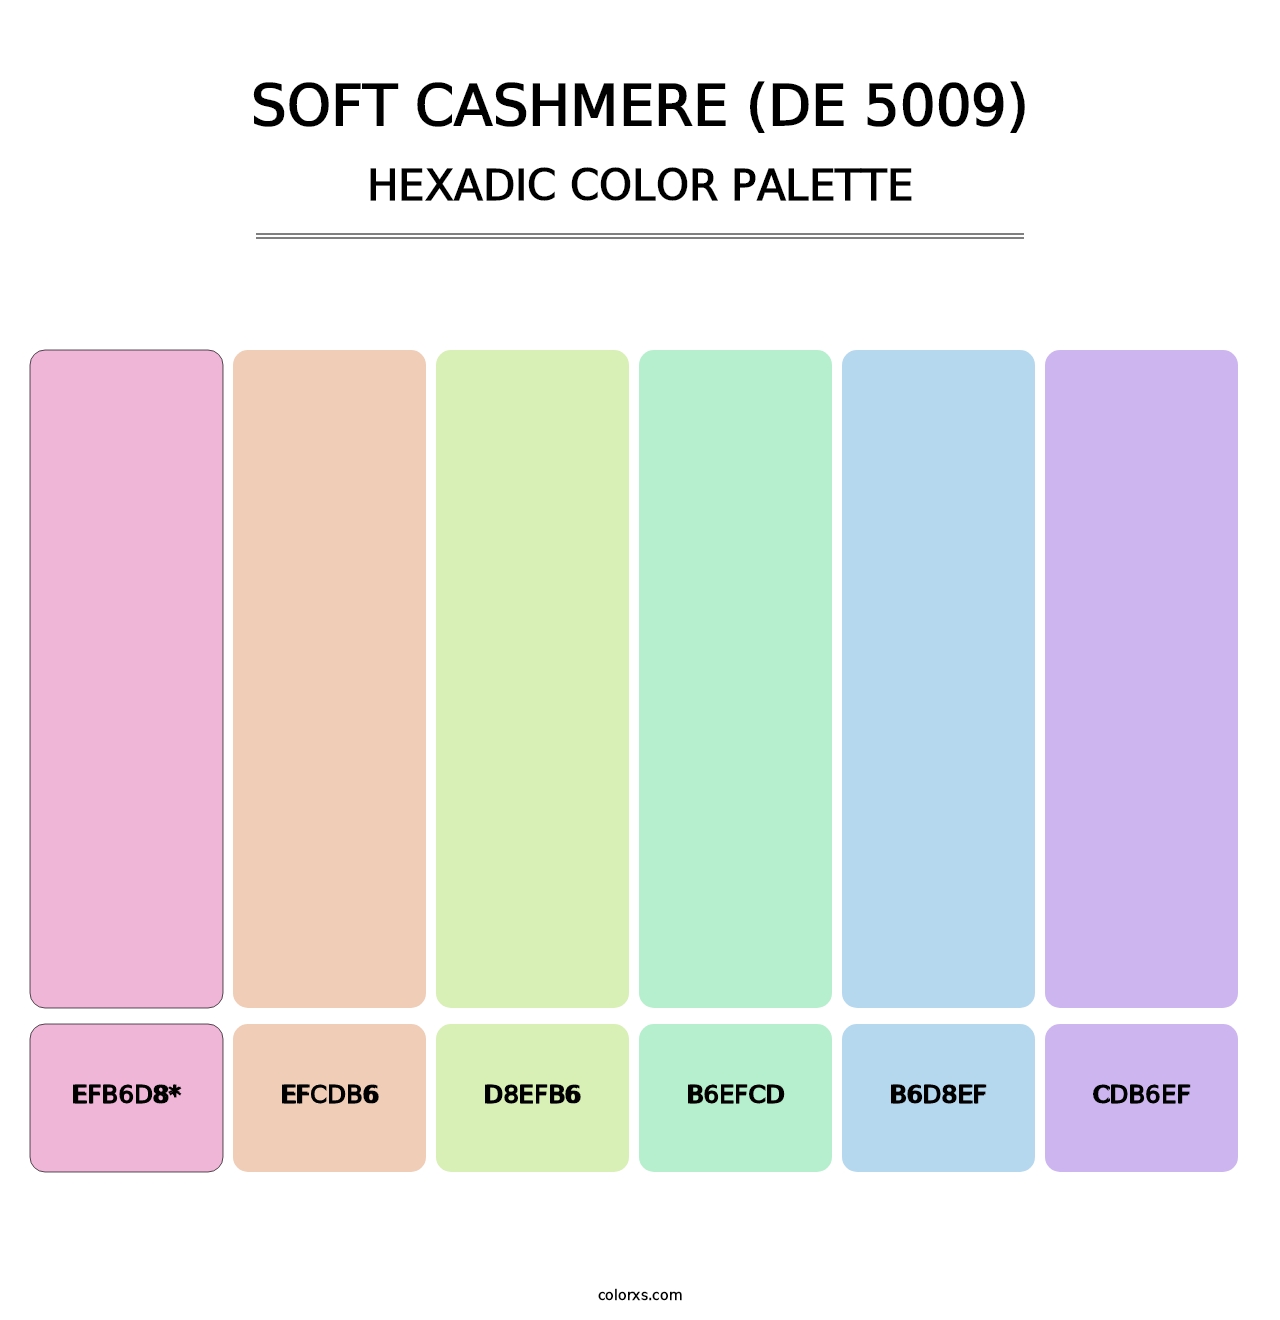 Soft Cashmere (DE 5009) - Hexadic Color Palette